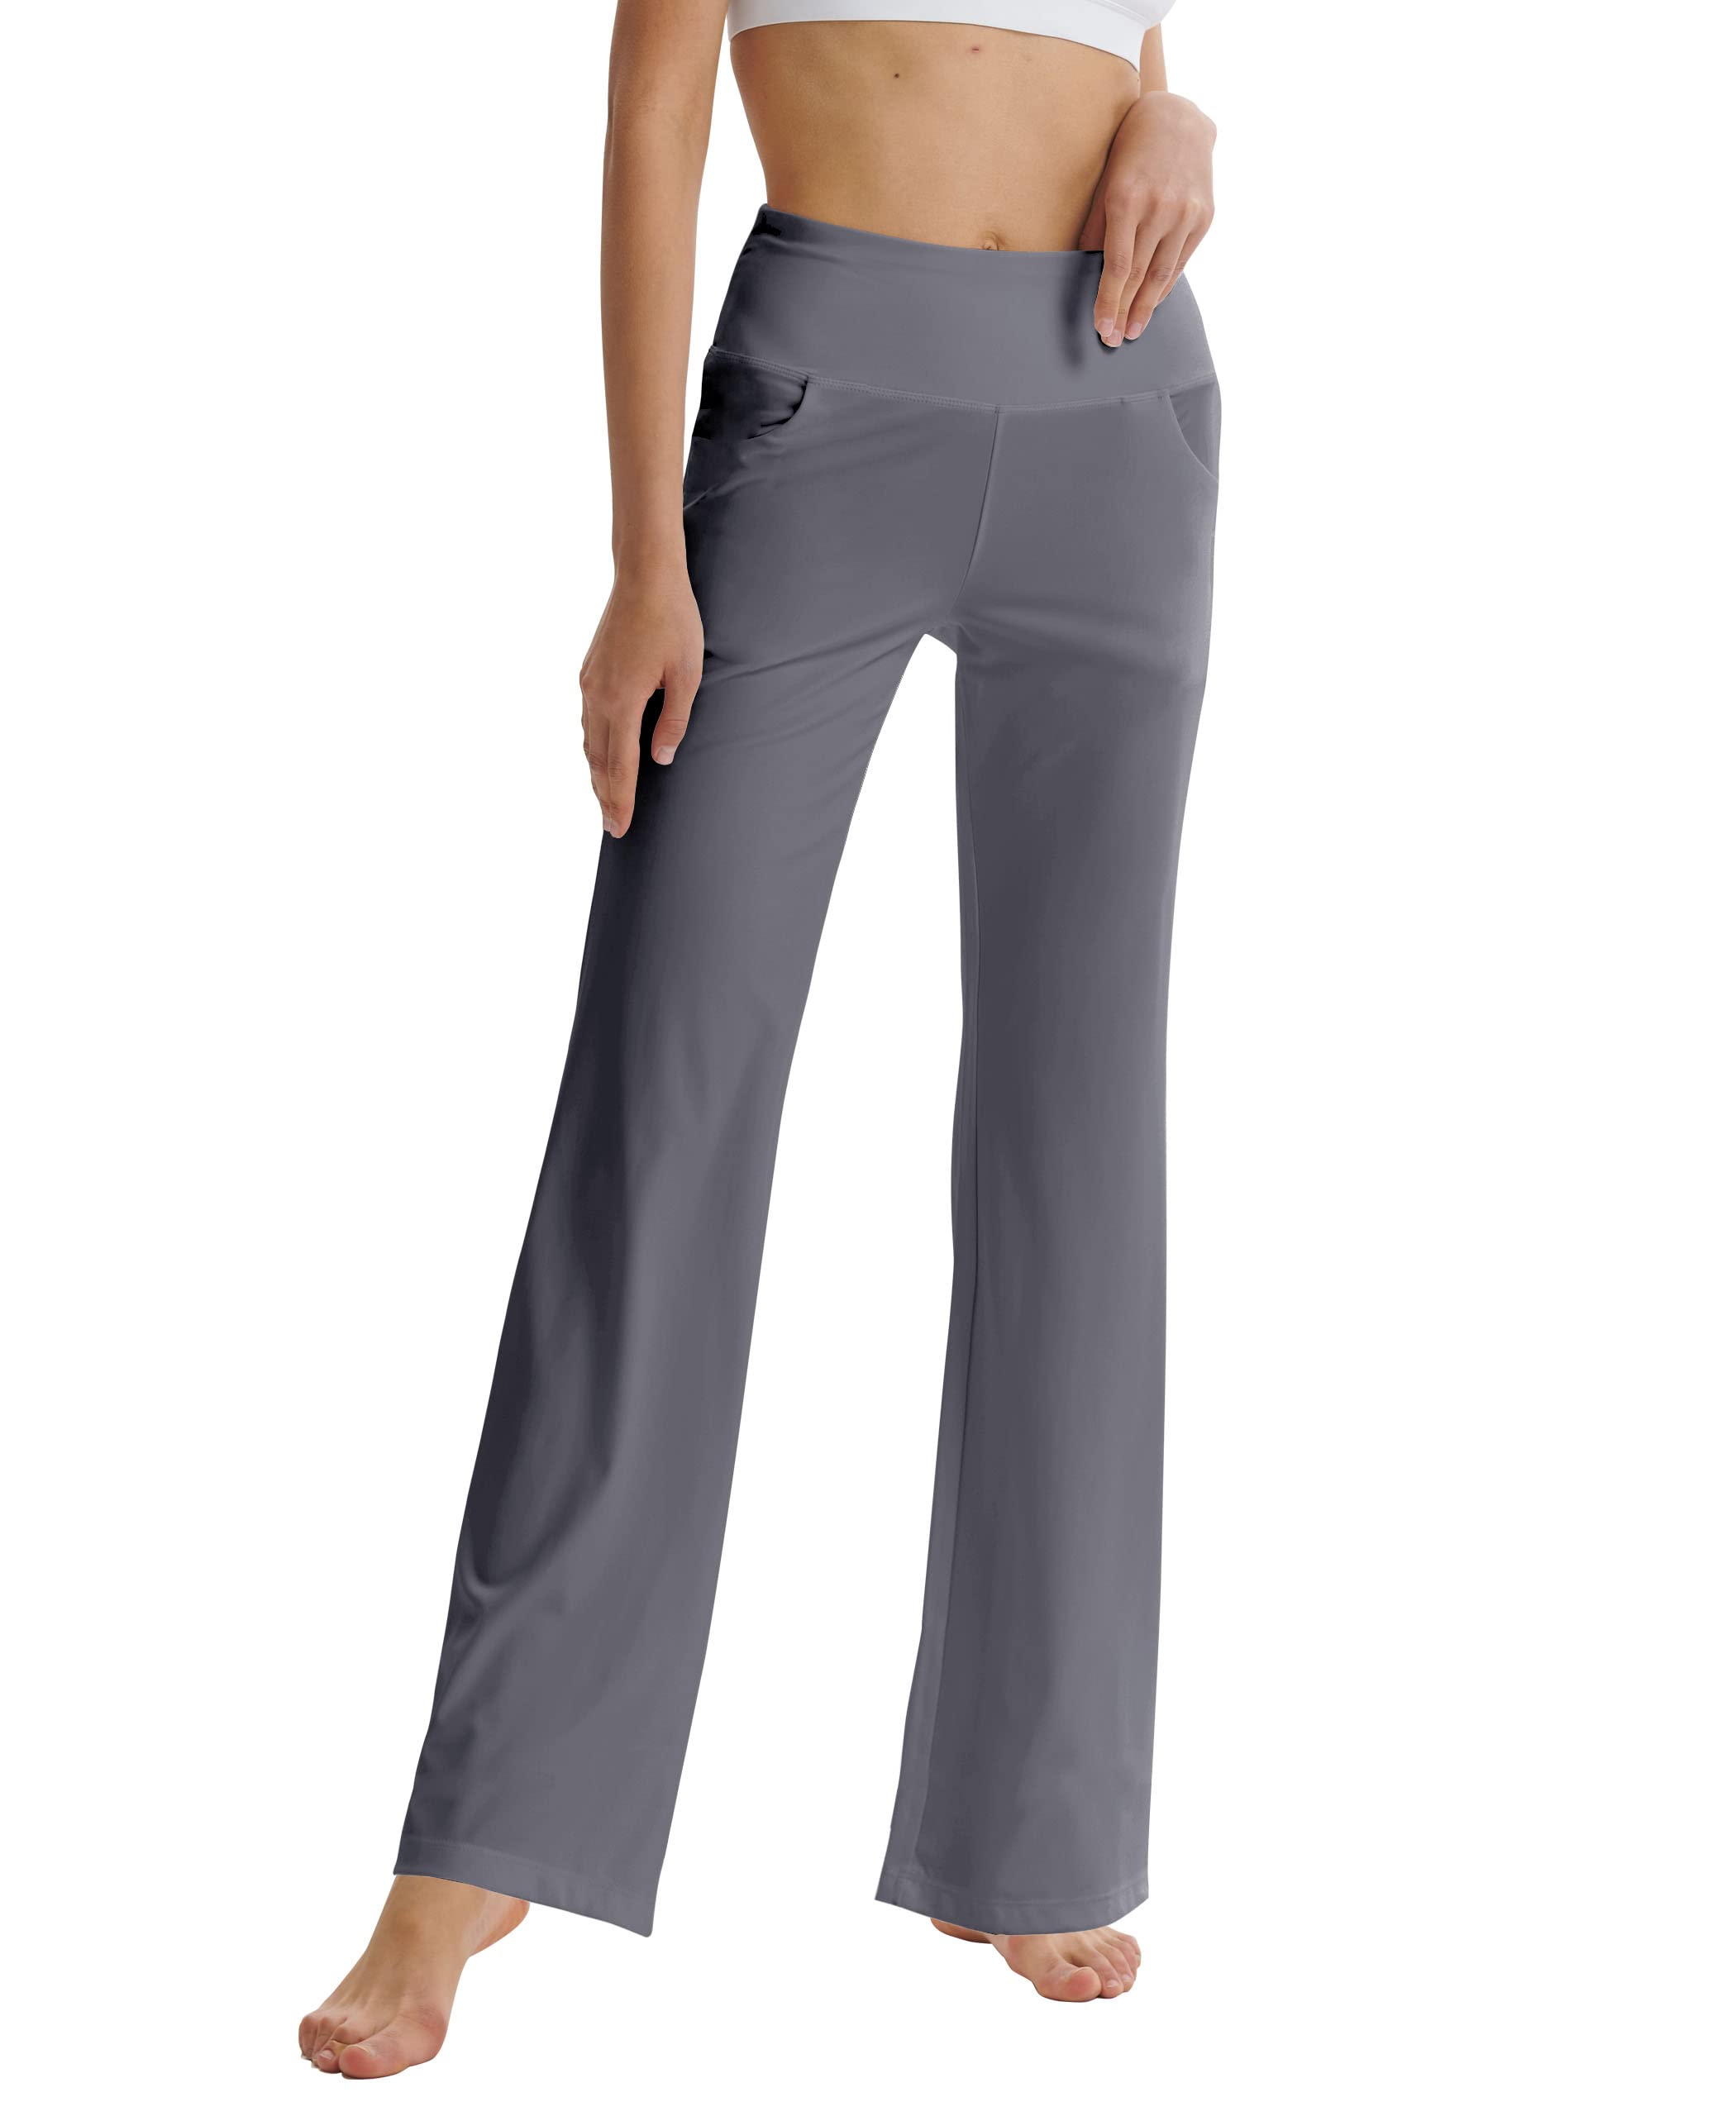 Pas Cher LaiEr Pantalon de Yoga Bootcut pour Femme avec Poches, Pantalon d´entraînement de Yoga Bootleg évasé Taille Haute avec Poches latérales vRrU3UgnY frais